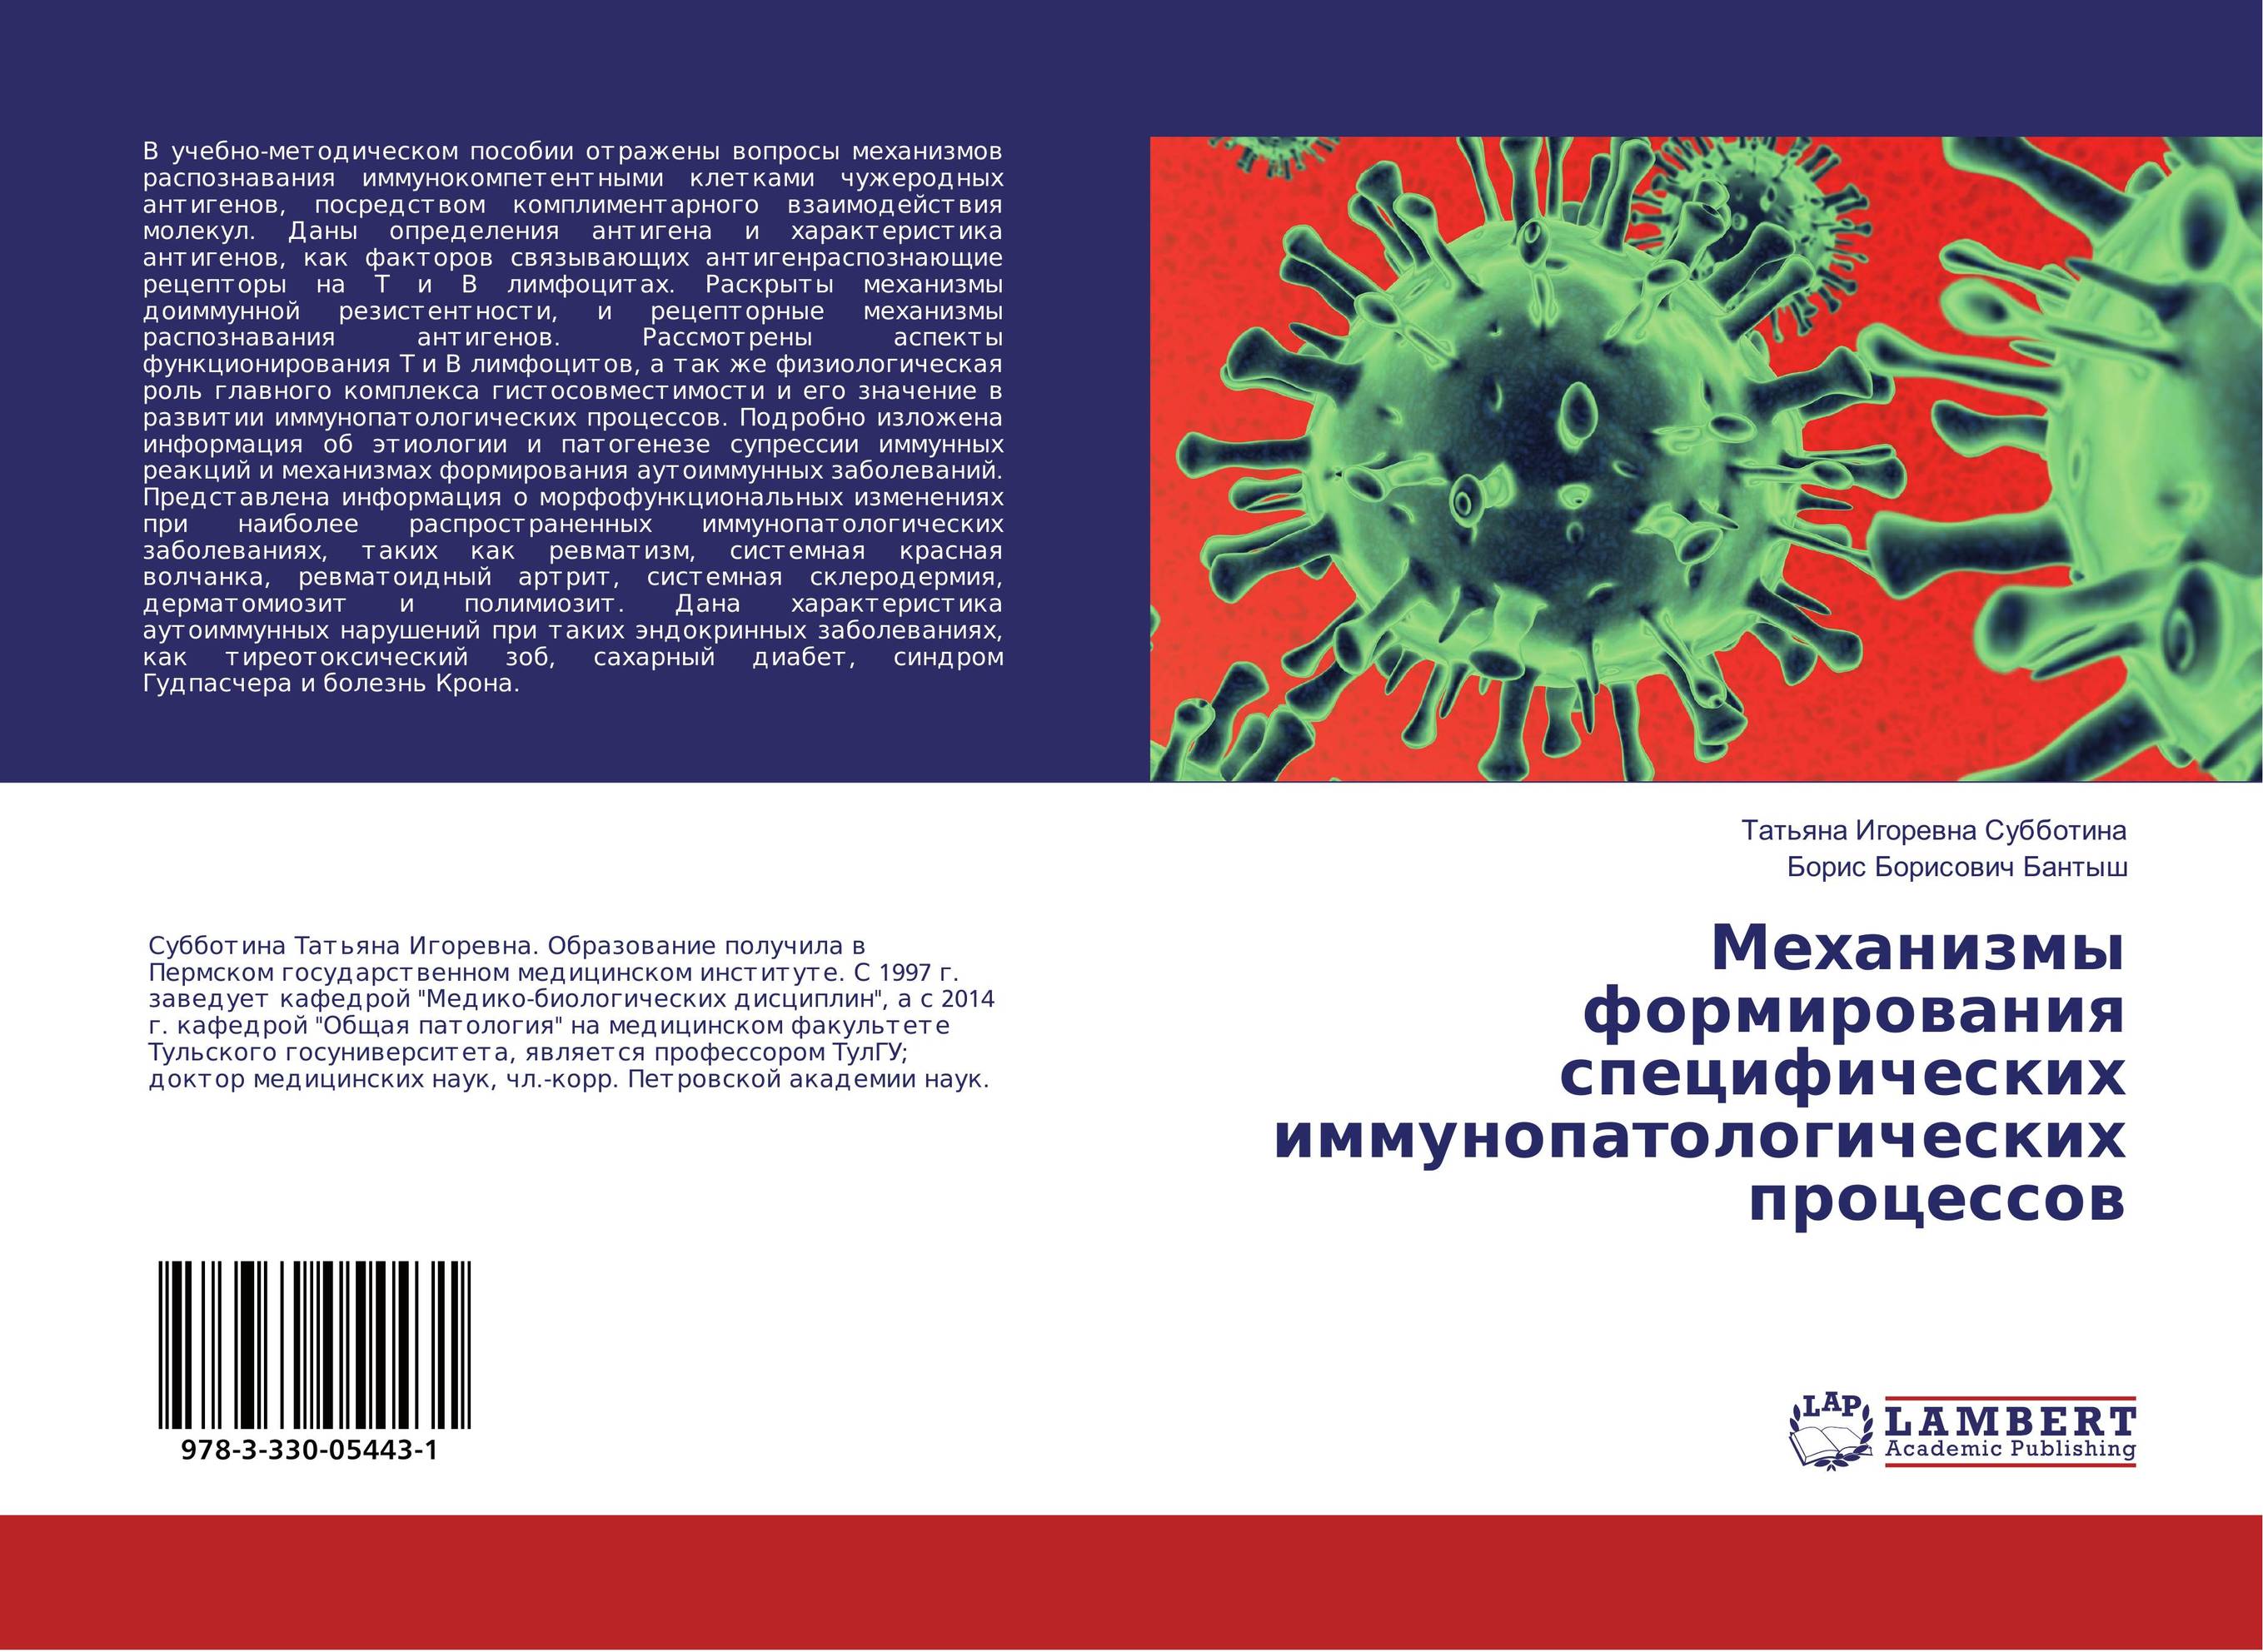 
        Механизмы формирования специфических иммунопатологических процессов..
      